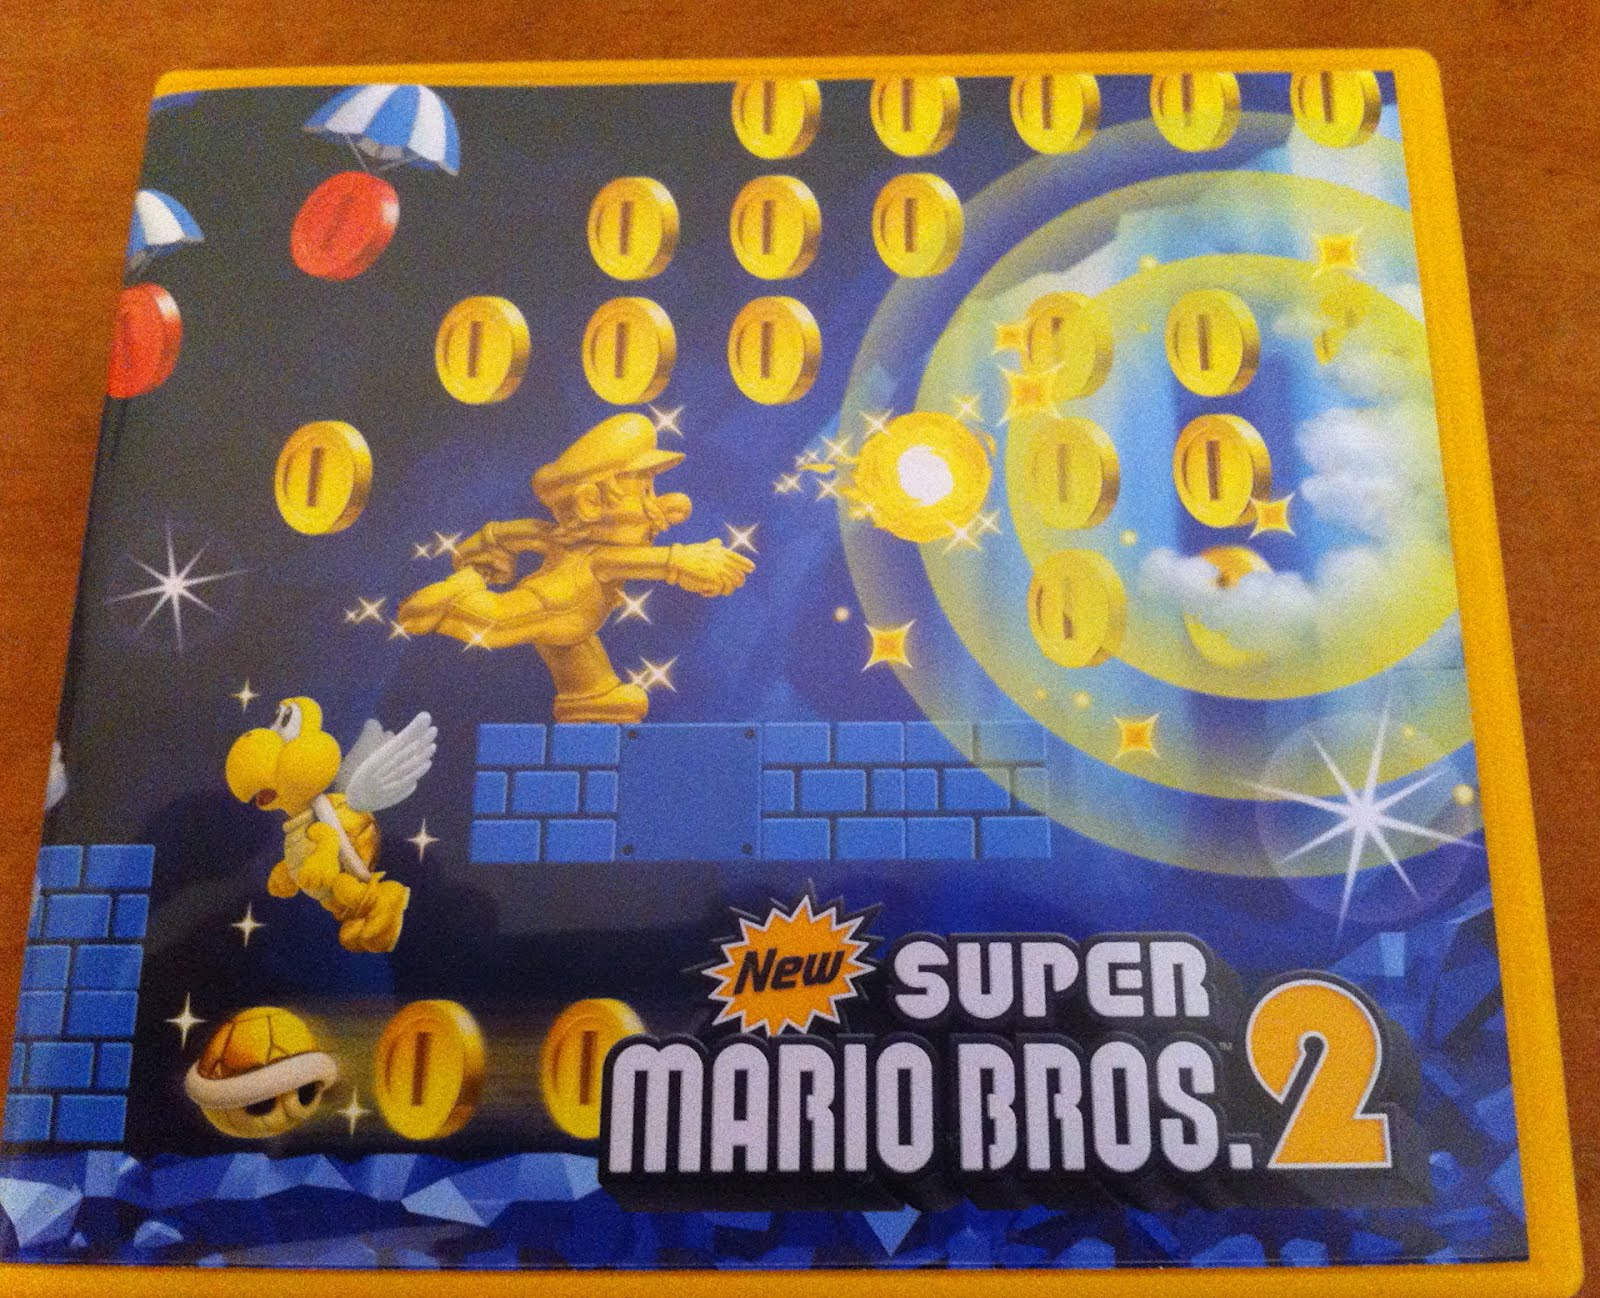 New Super Mario Bros 2 3Ds em Promoção na Americanas